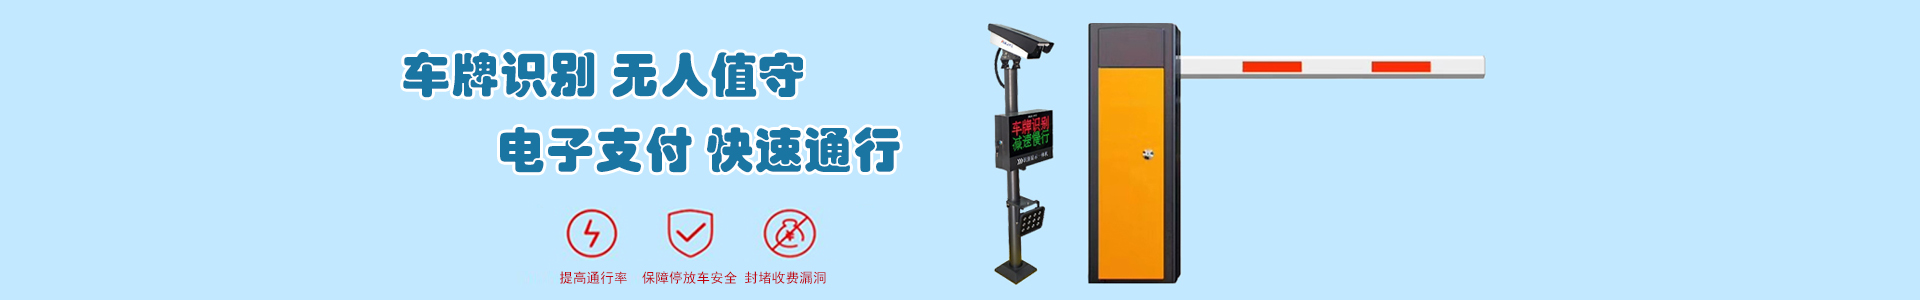 监控1-监控系统-上海帆蓝智能科技有限公司-车辆车牌识别|监控摄像头|道闸|小区门禁|人脸识别|伸缩门|